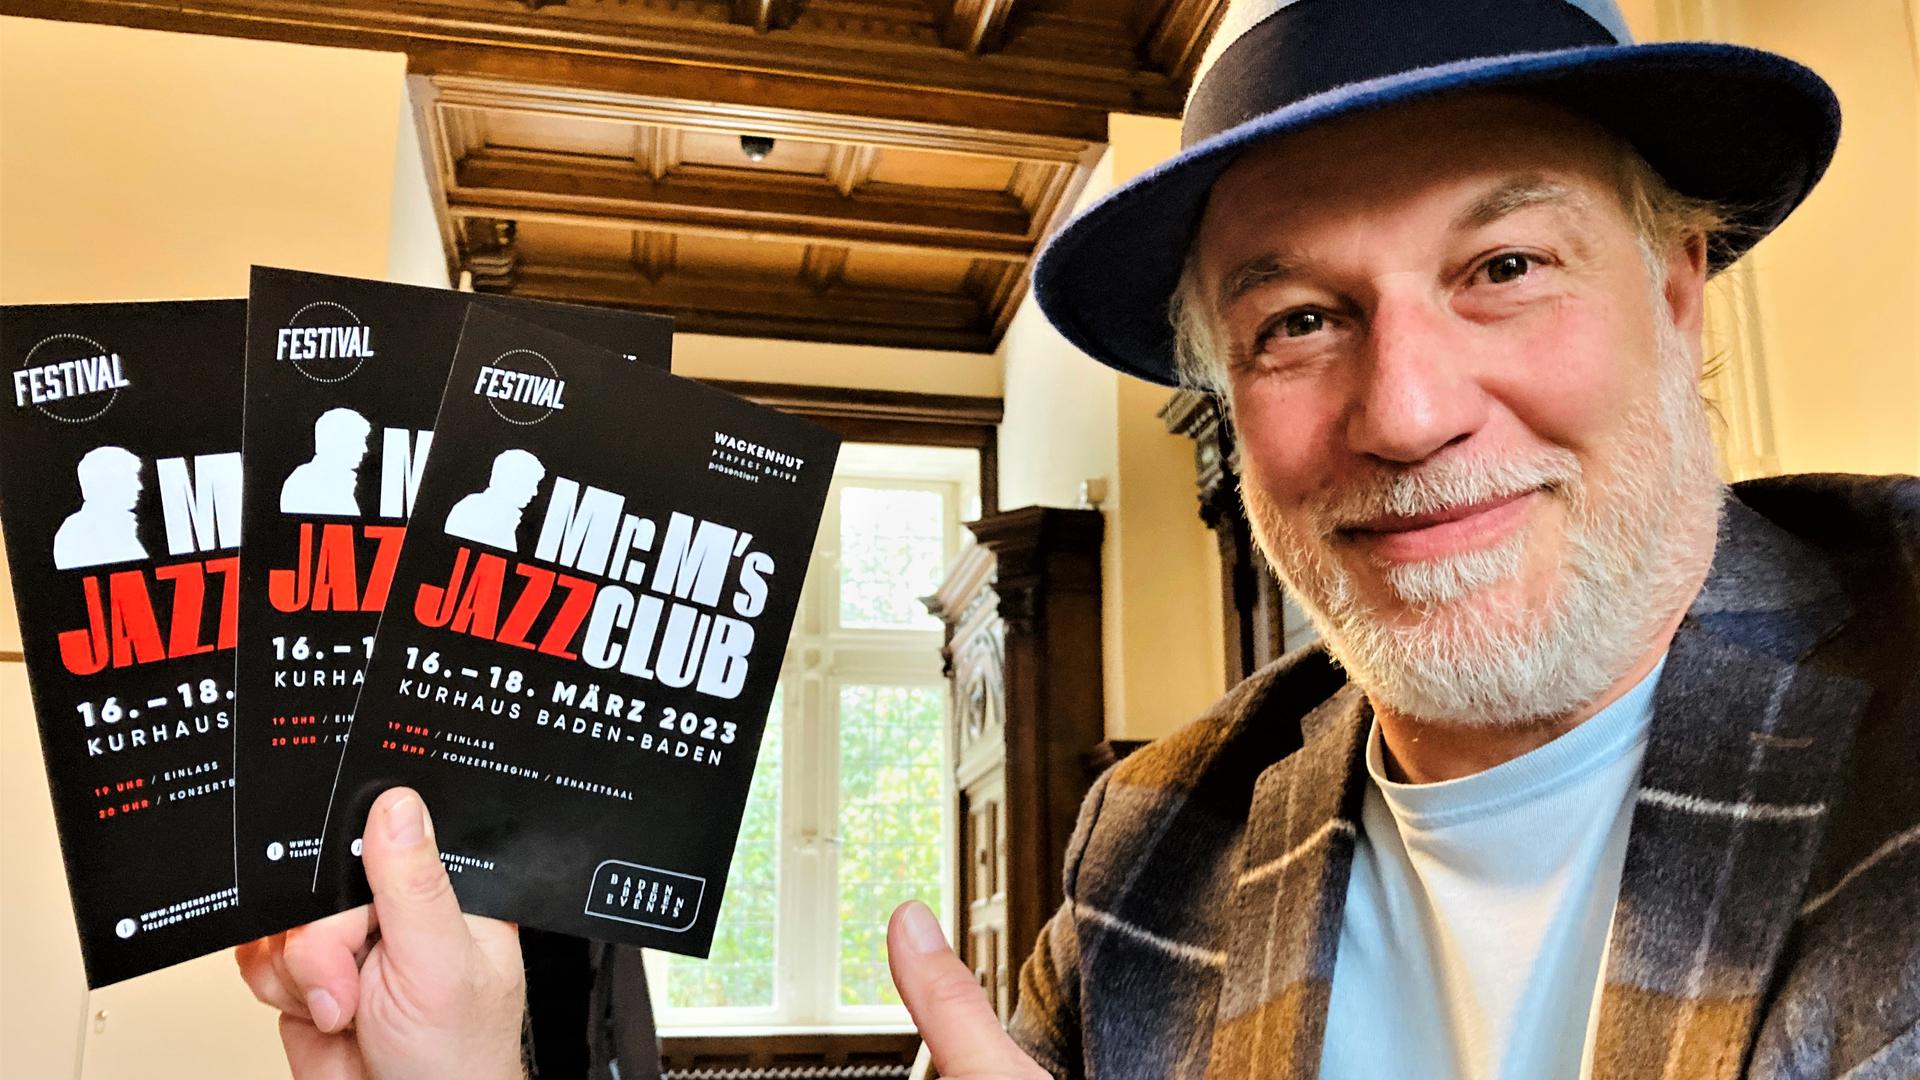 Sänger und Entertainer Marc Marshall hält Flyer für seine Veranstaltung Mr. M’s Jazzclub in den Händen. 